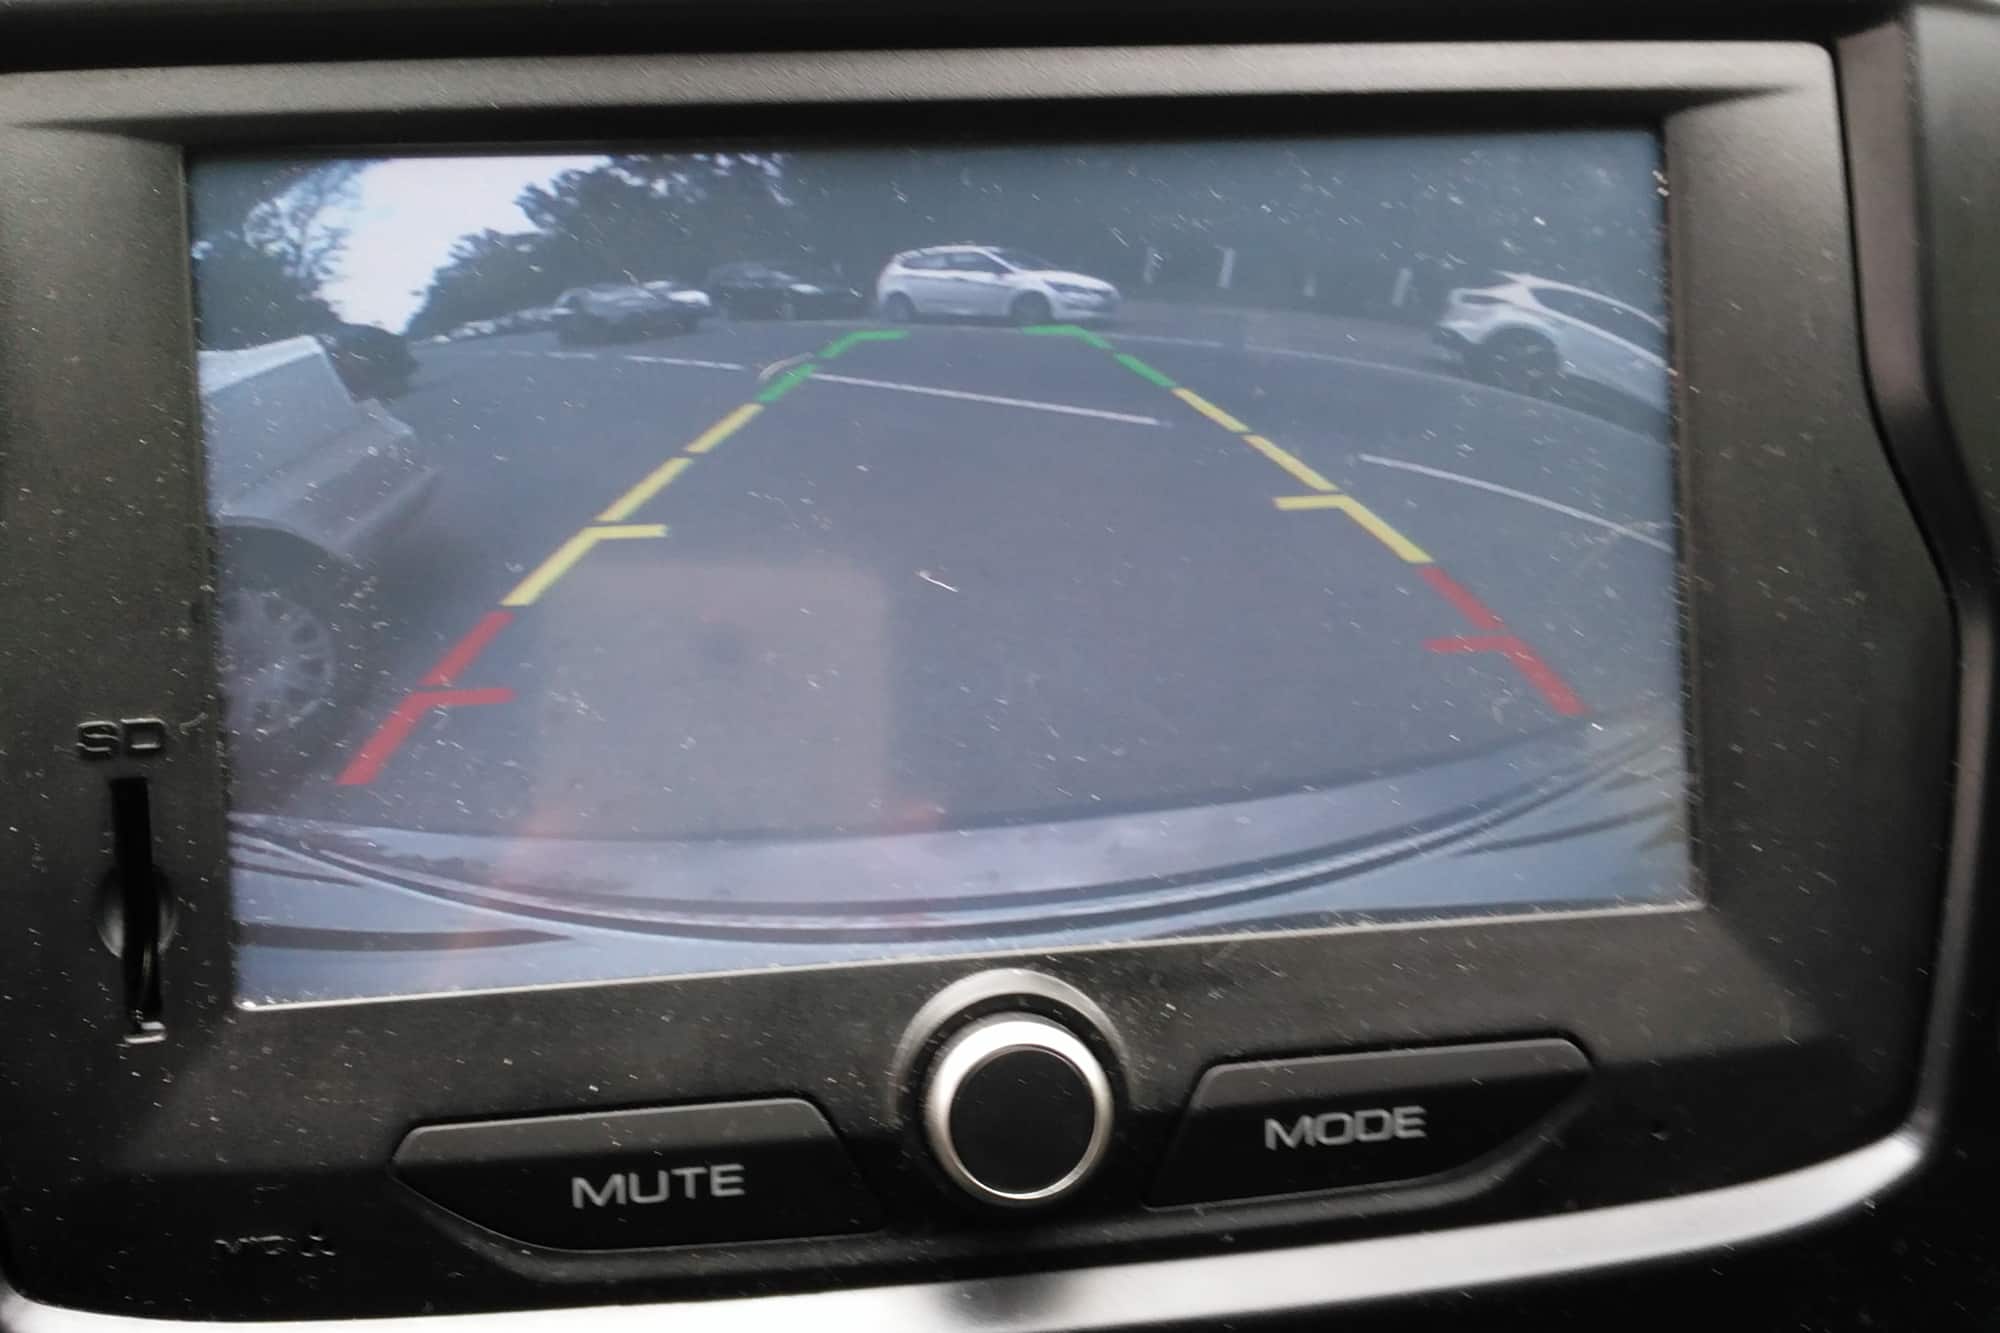 Cómo instalar cámara trasera en coche con facilidad